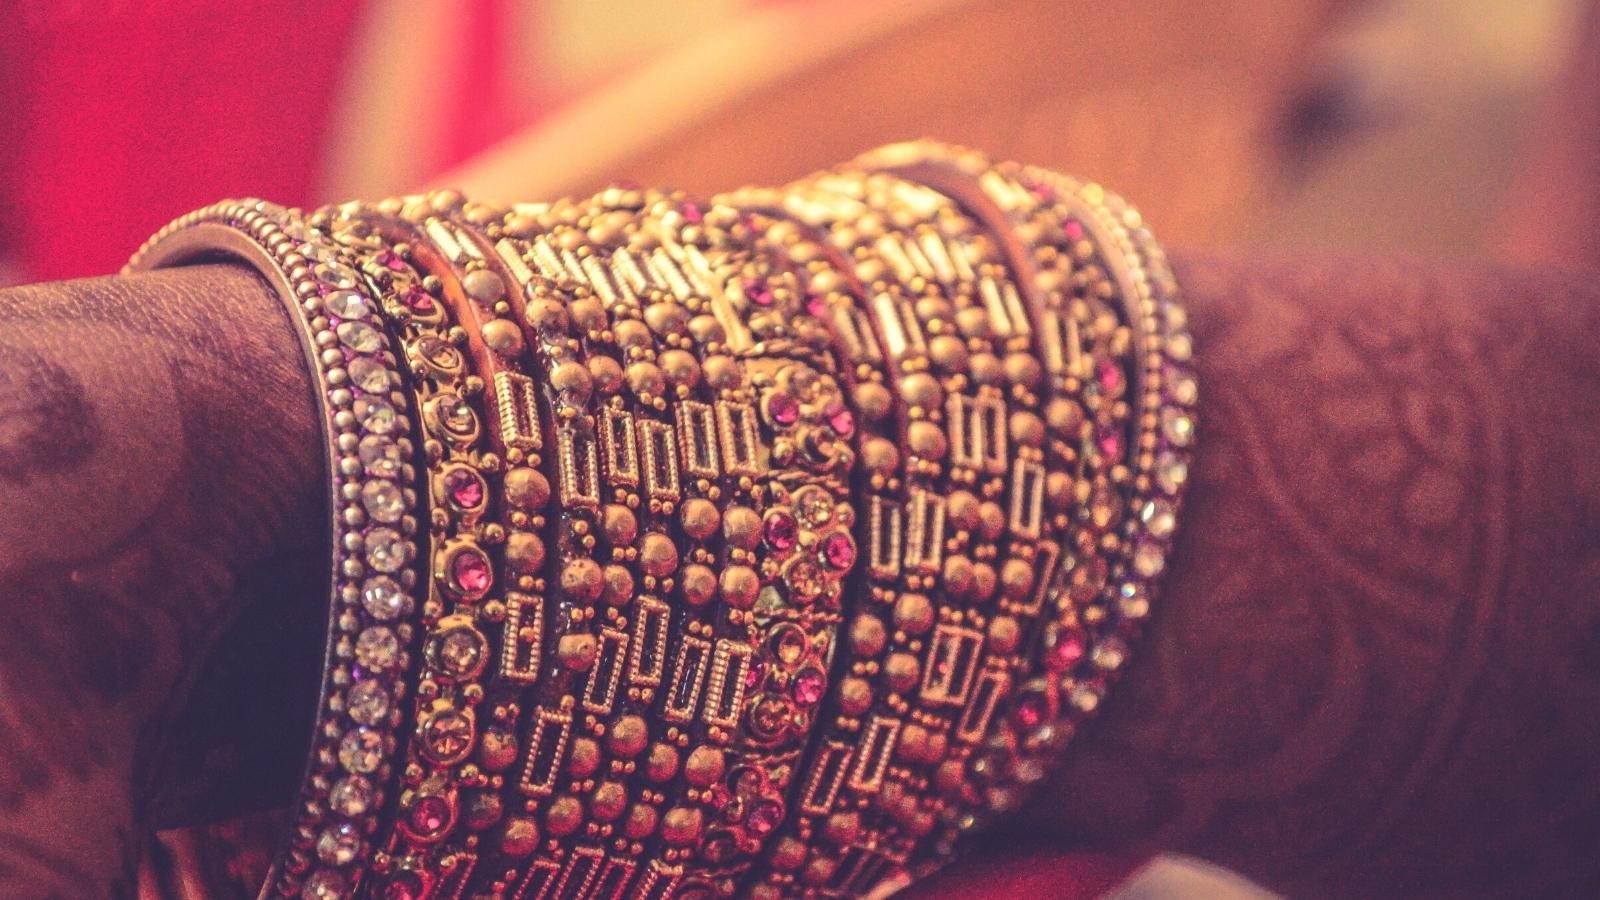 The broken wedding bangles - Understanding your dreams - Kaya